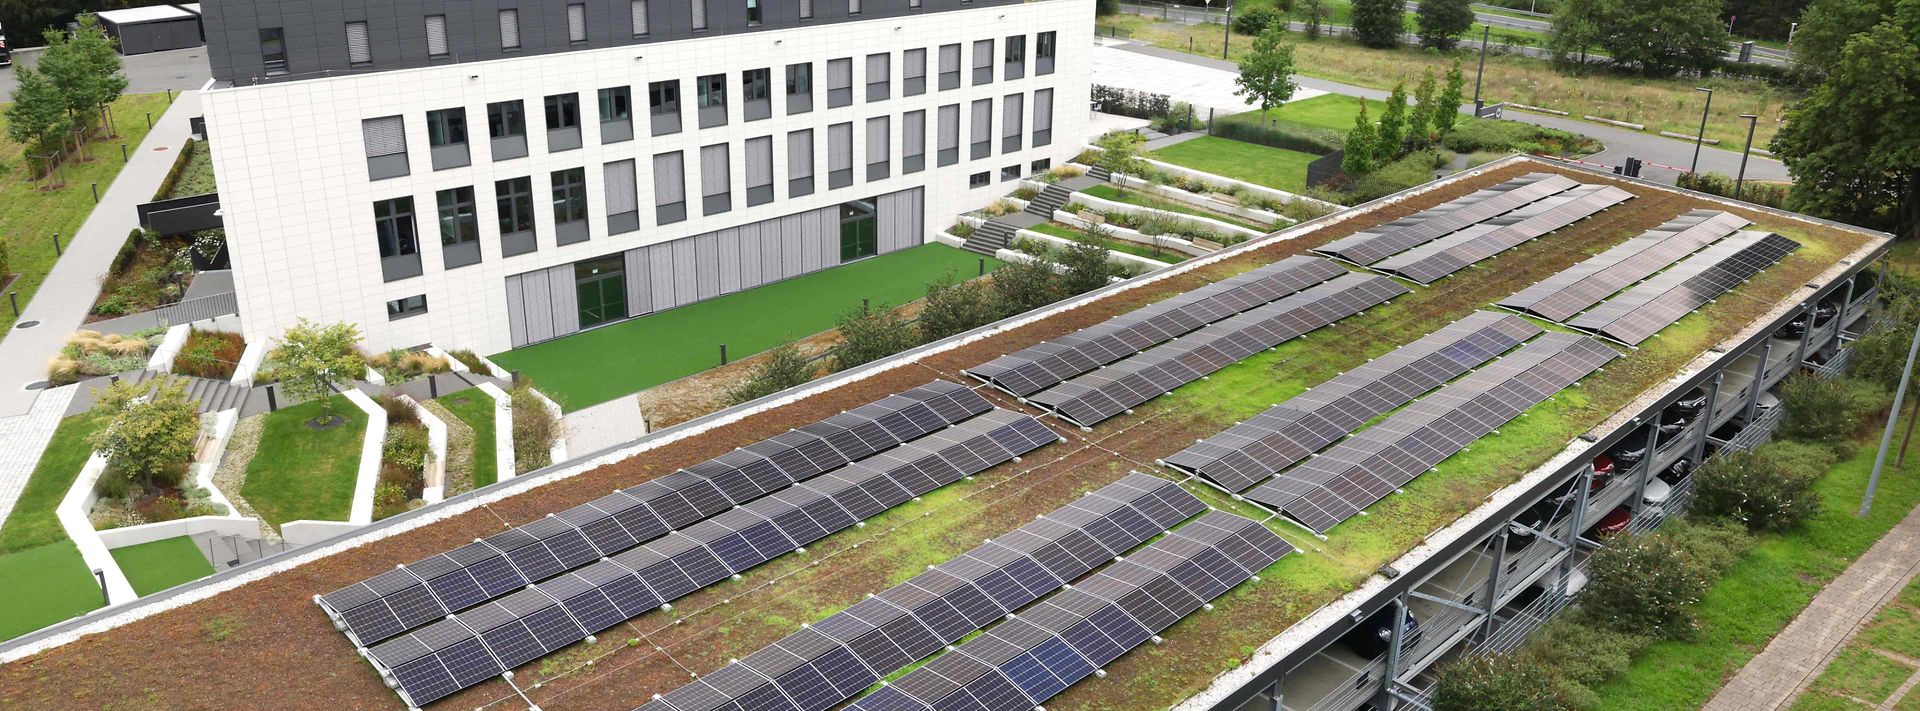 Blick auf das Dach eines Parkhauses mit Photovoltaikmodulen